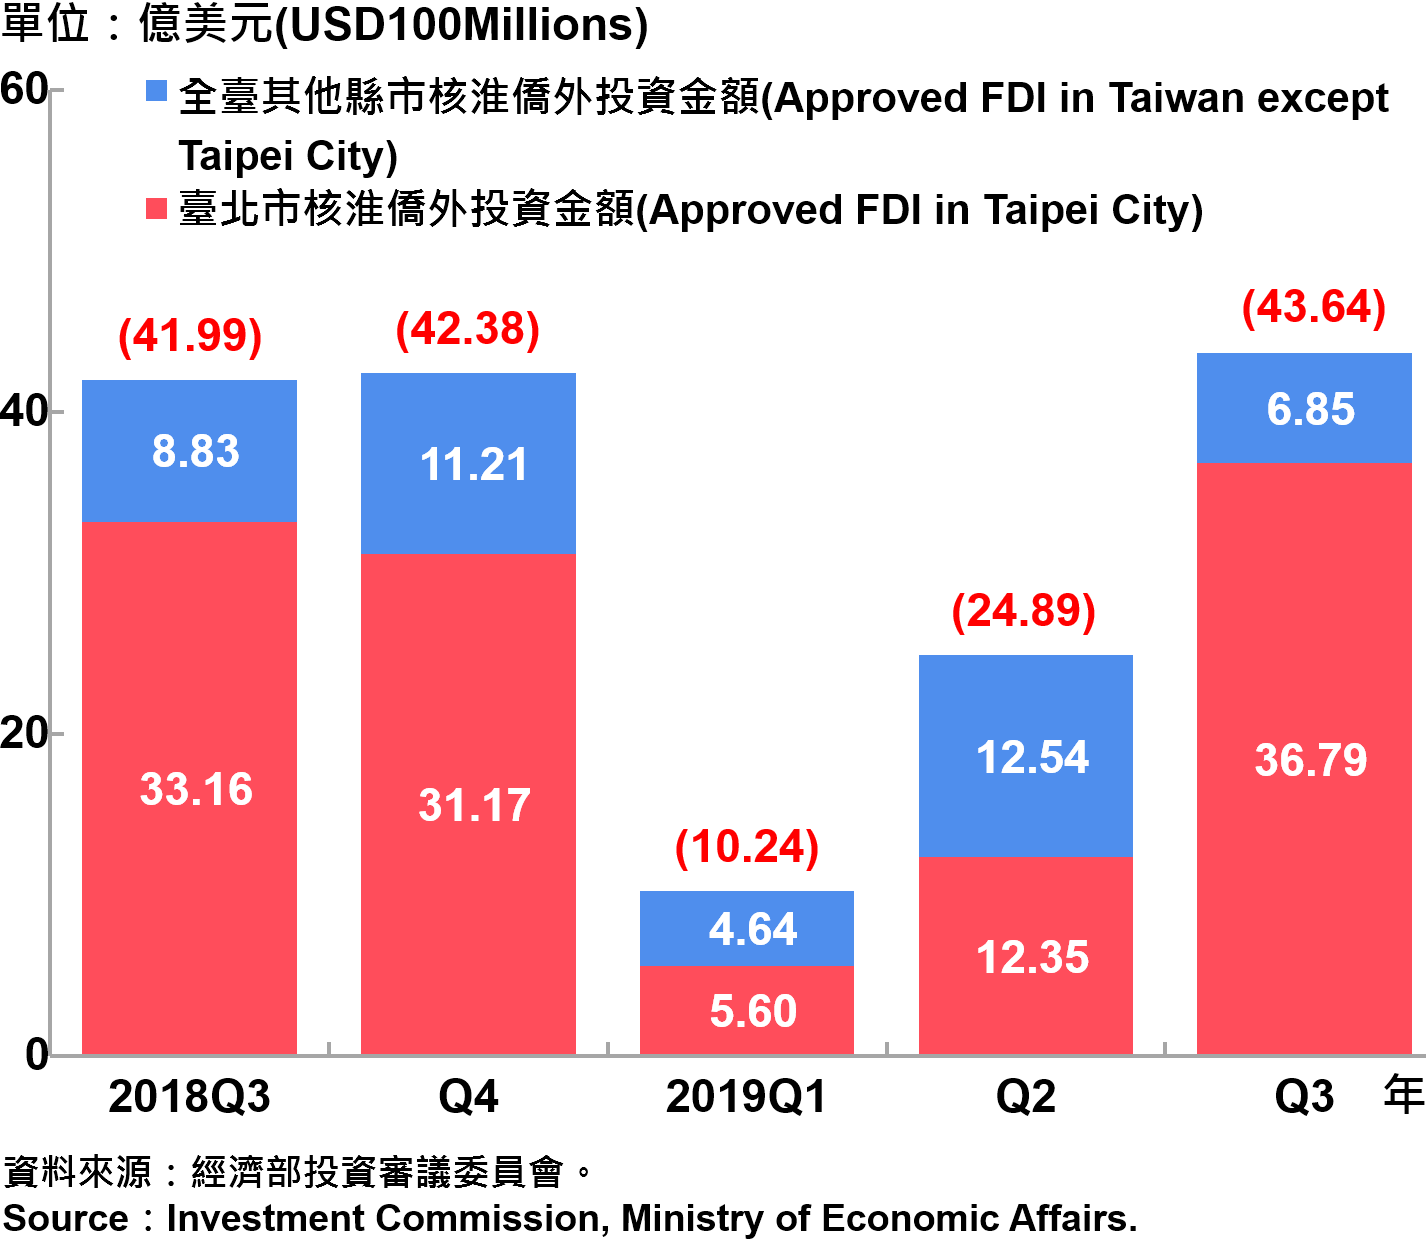 臺北市與全國僑外投資金額—2019Q3 Foreign Direct Investment（FDI）in Taipei City and Taiwan—2019Q3